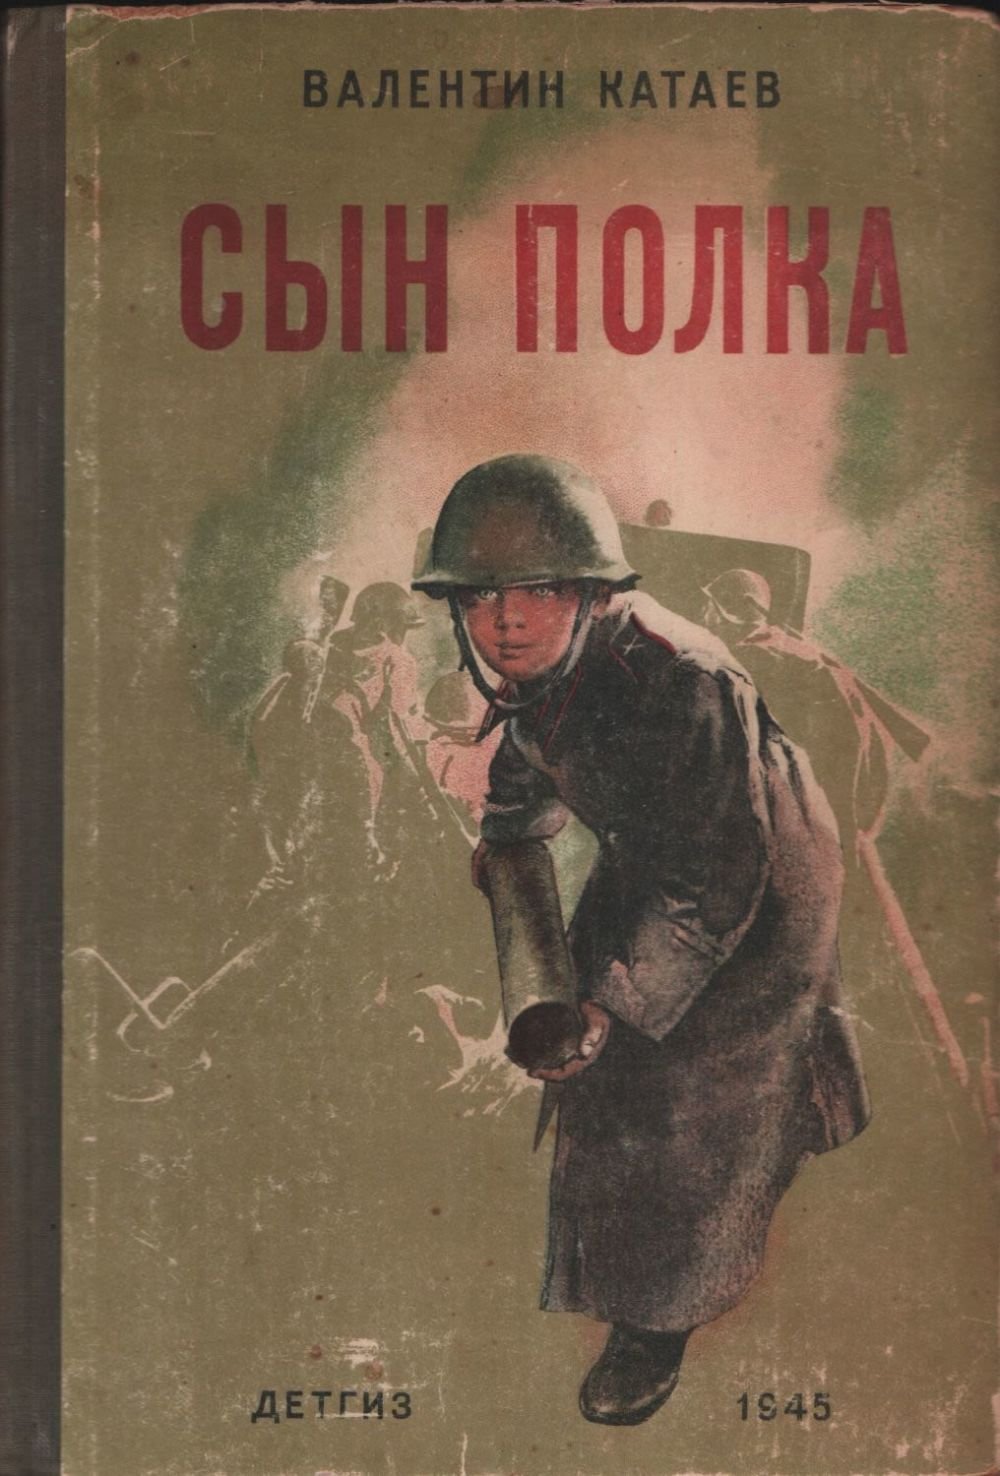 Книга сын полка полностью. Сын полка в п Катаева 1945. Книга сын полка 1945.